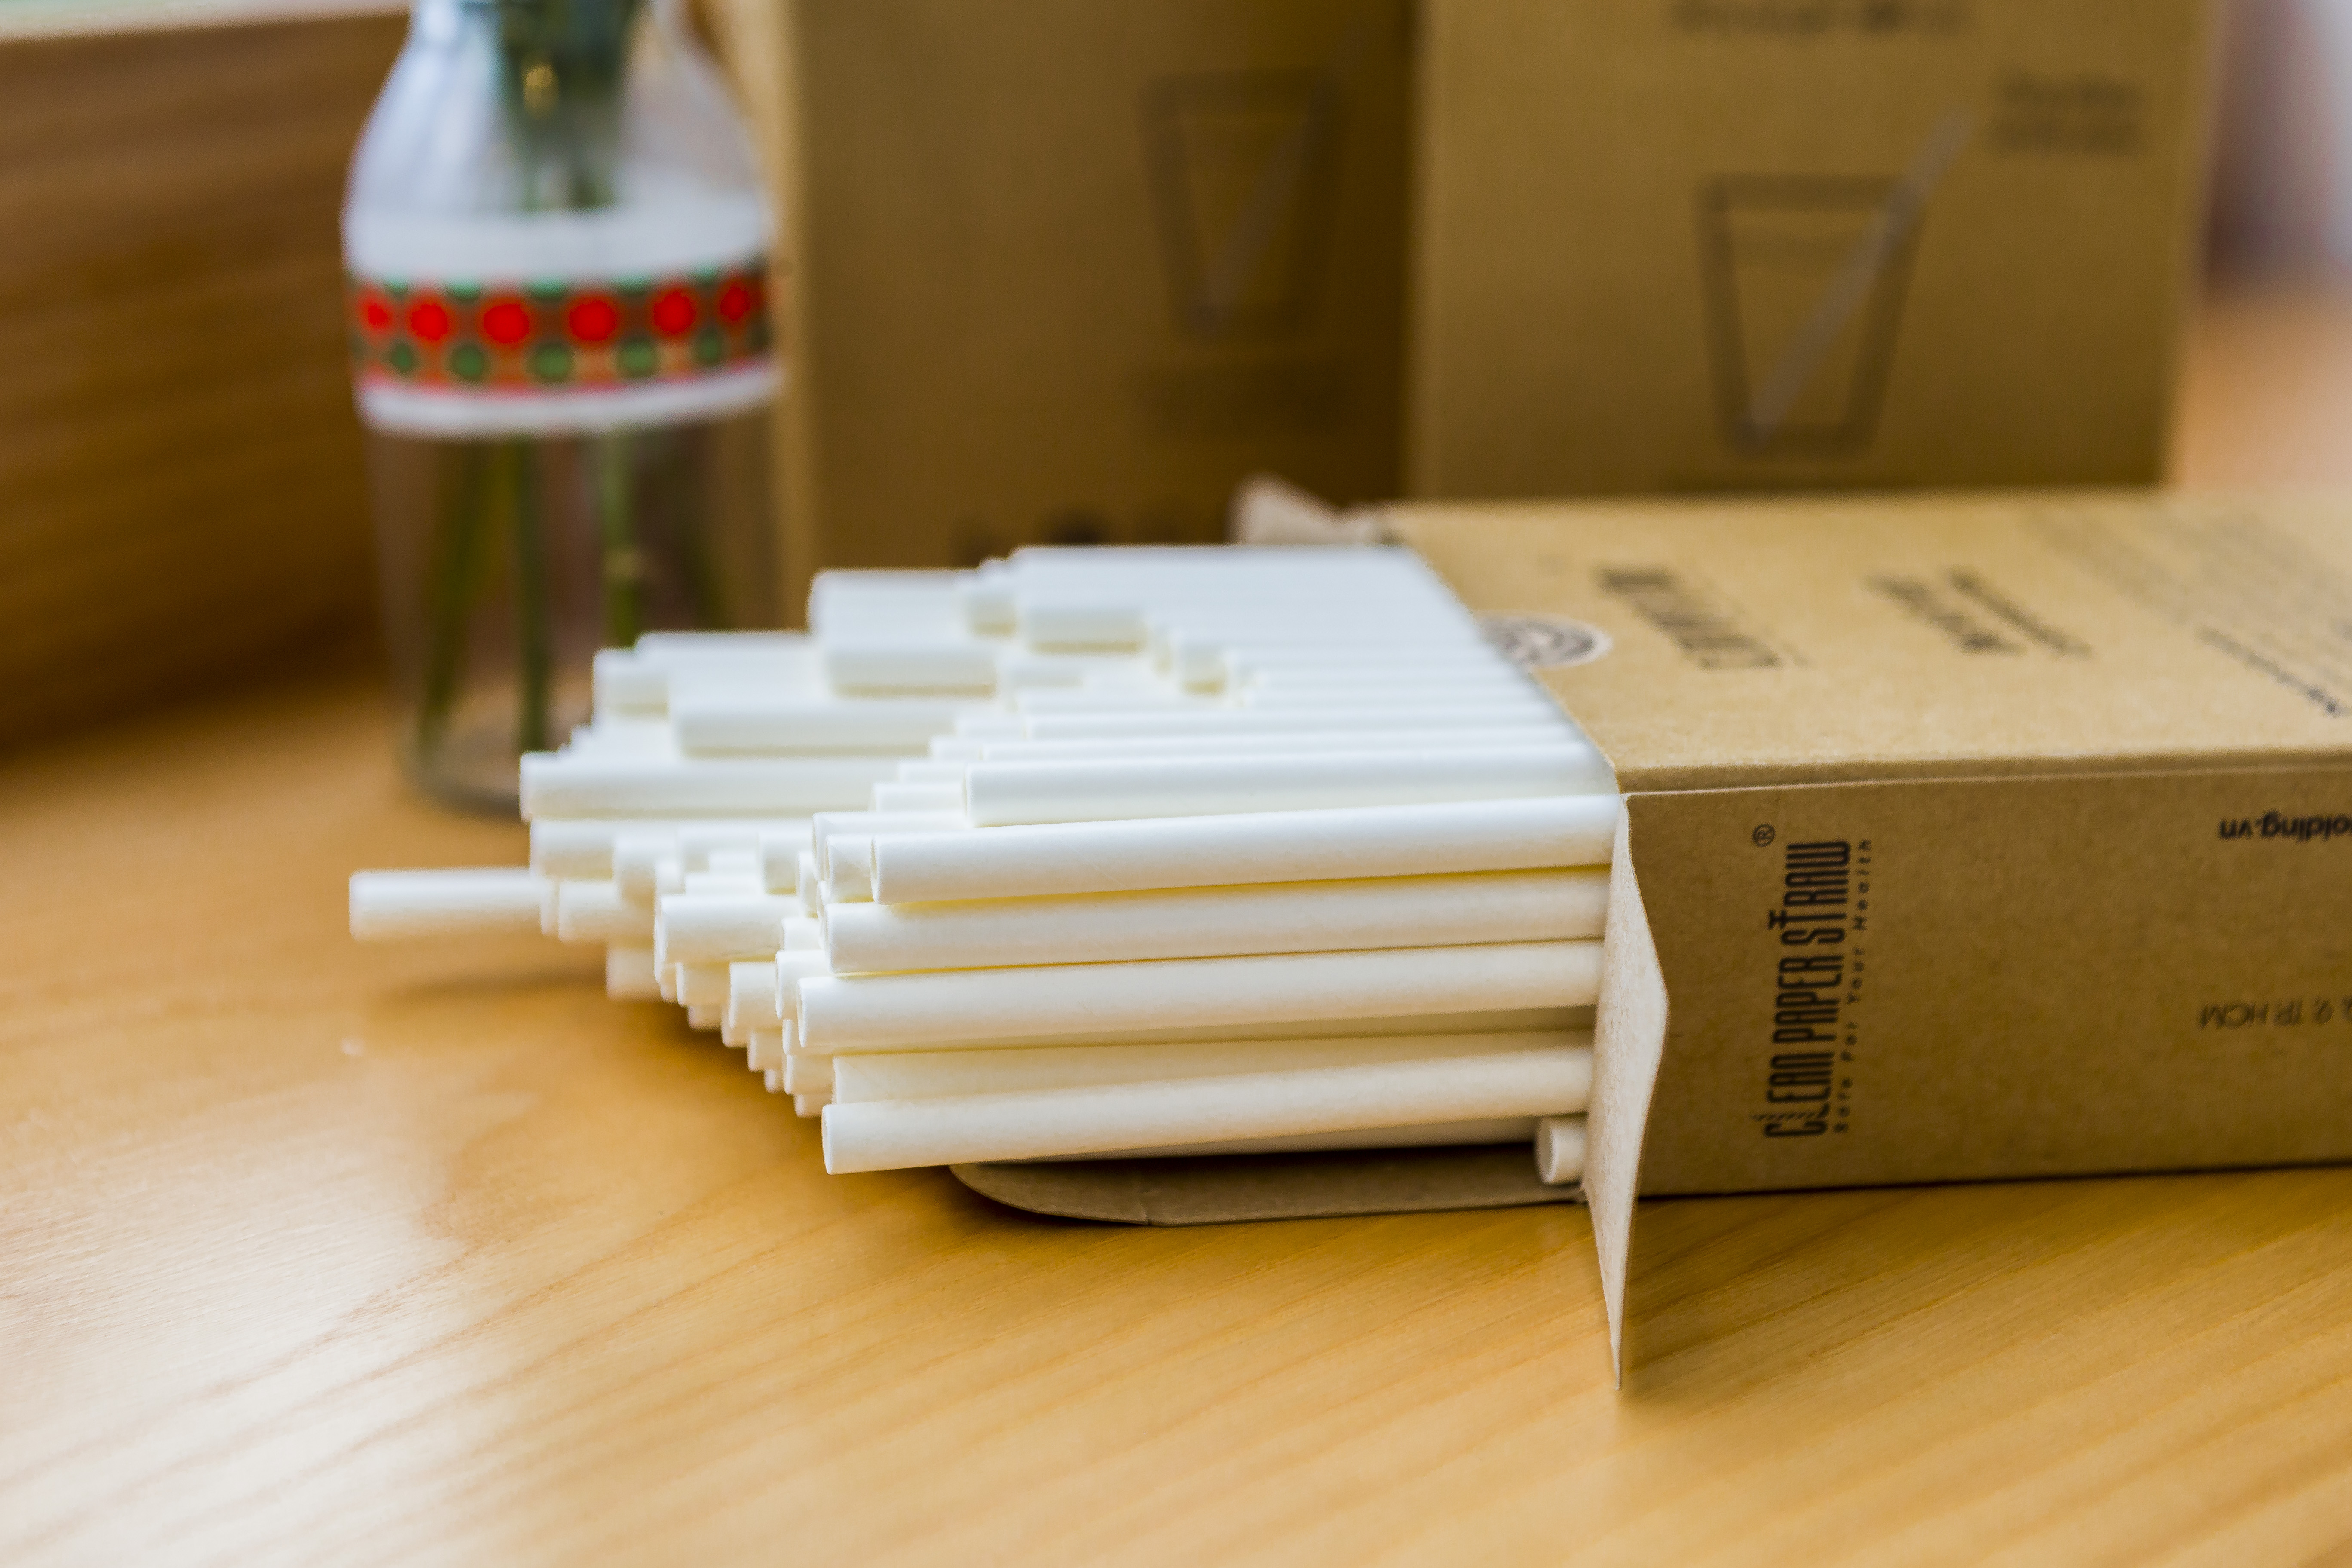 ống hút giấy cao cấp Clean Paper straw- thùng khoảng 3000 ống (8mm x 197mm)